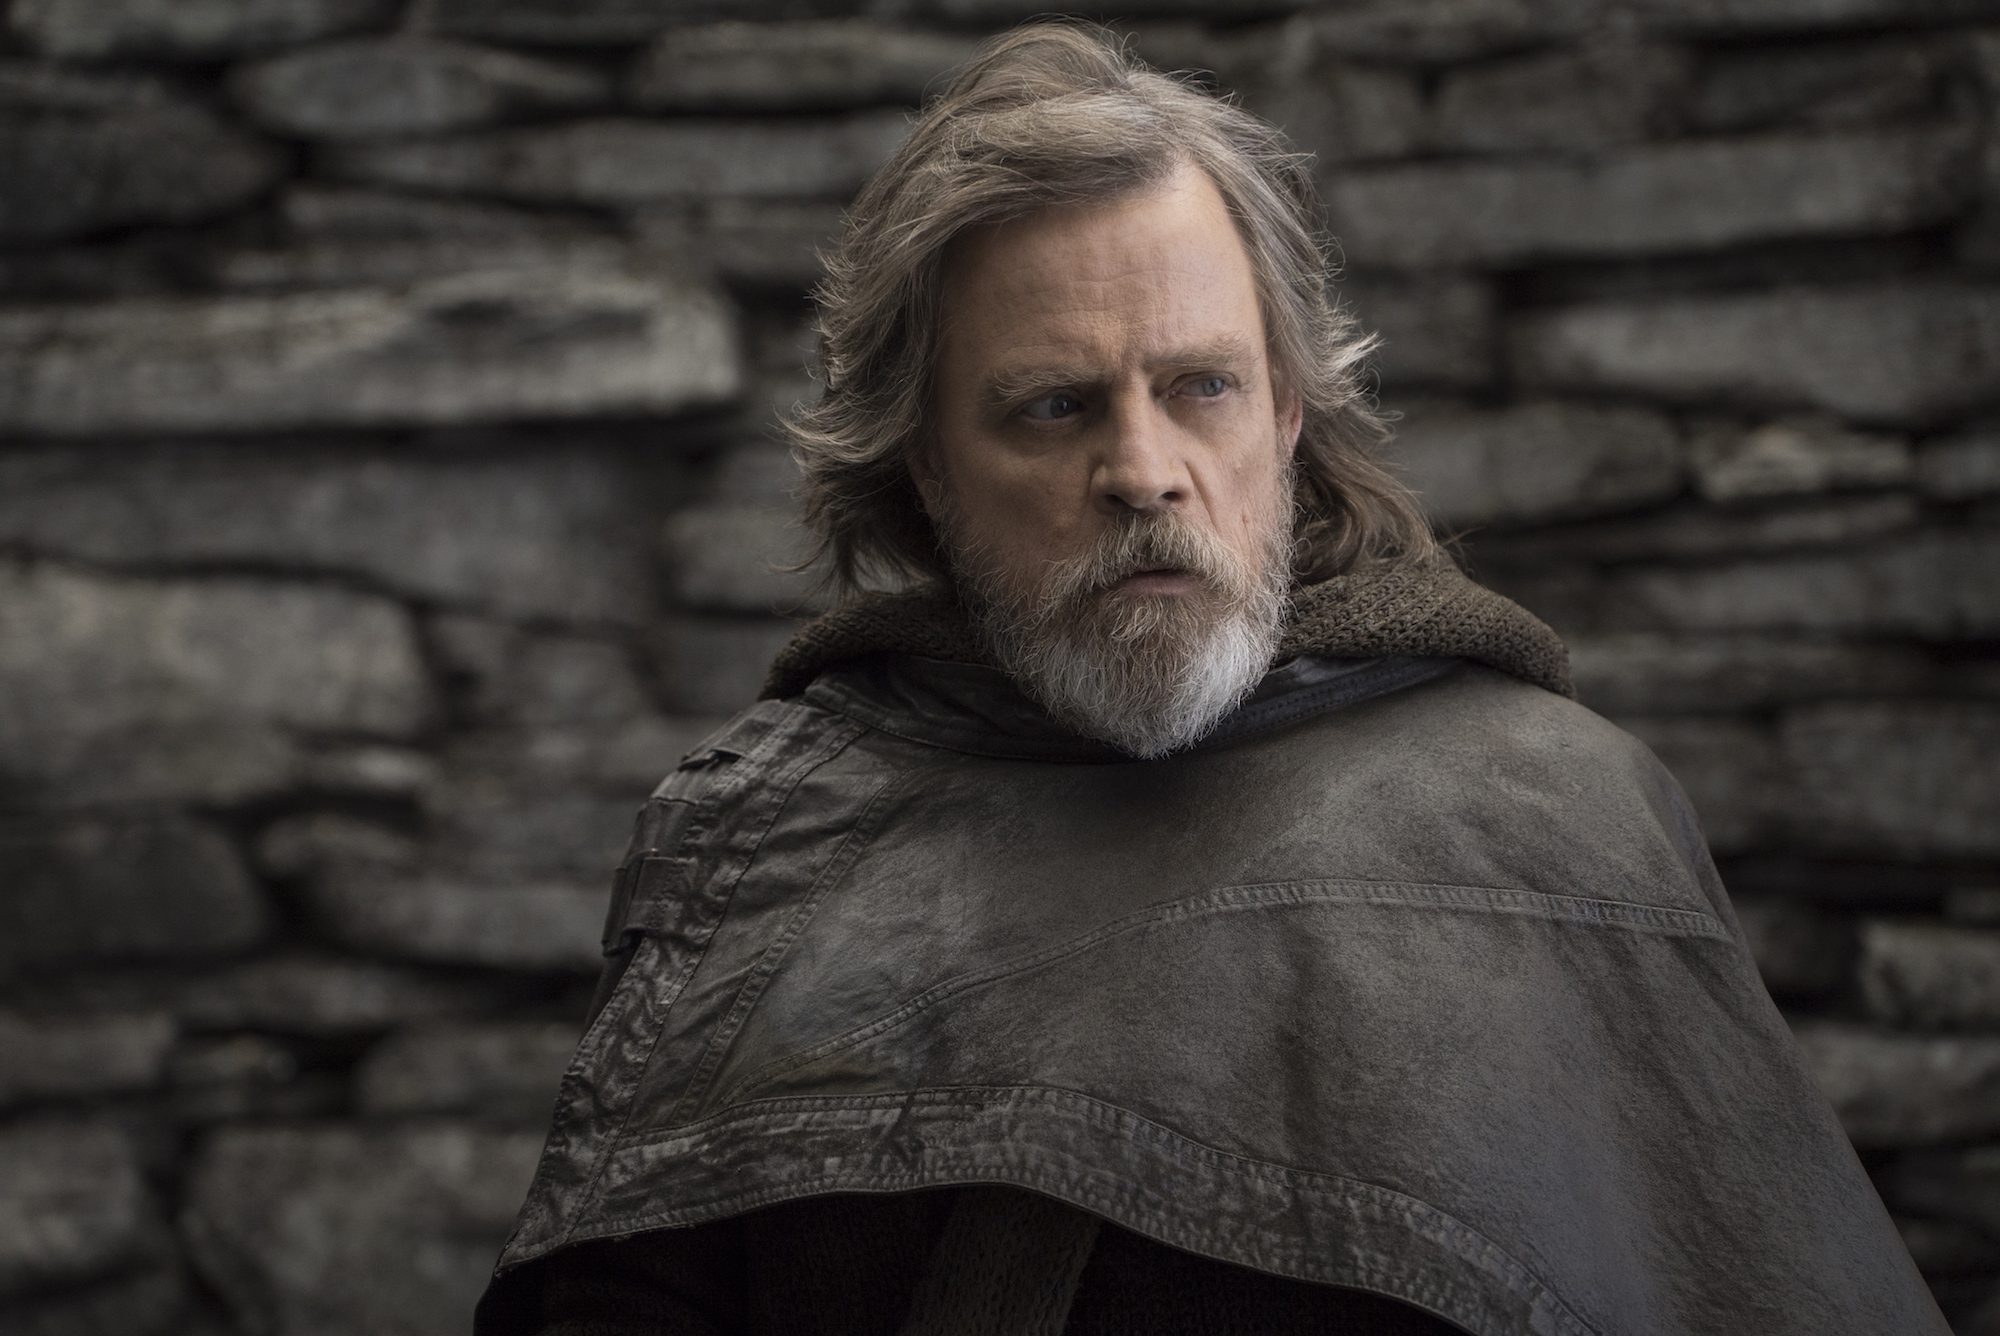 Luke Skywalker (Mark Hamill) in "Star Wars: The Last Jedi" (Walt Disney Pictures)